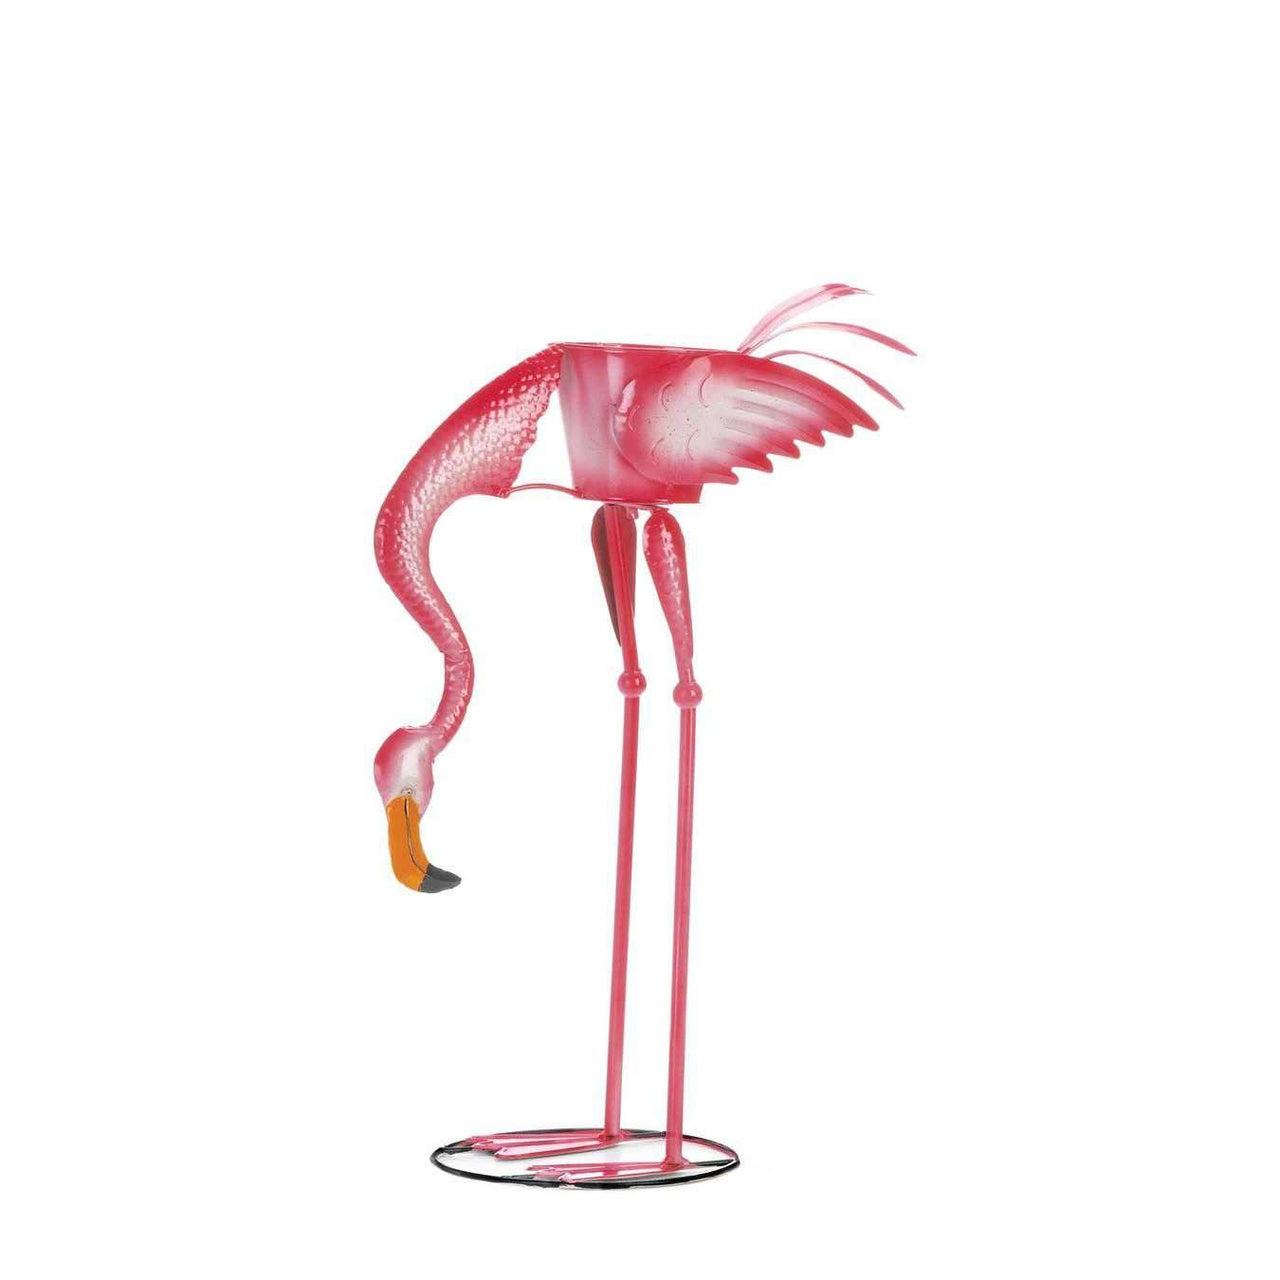 Ready To Eat Flamingo Planter - The Fox Decor